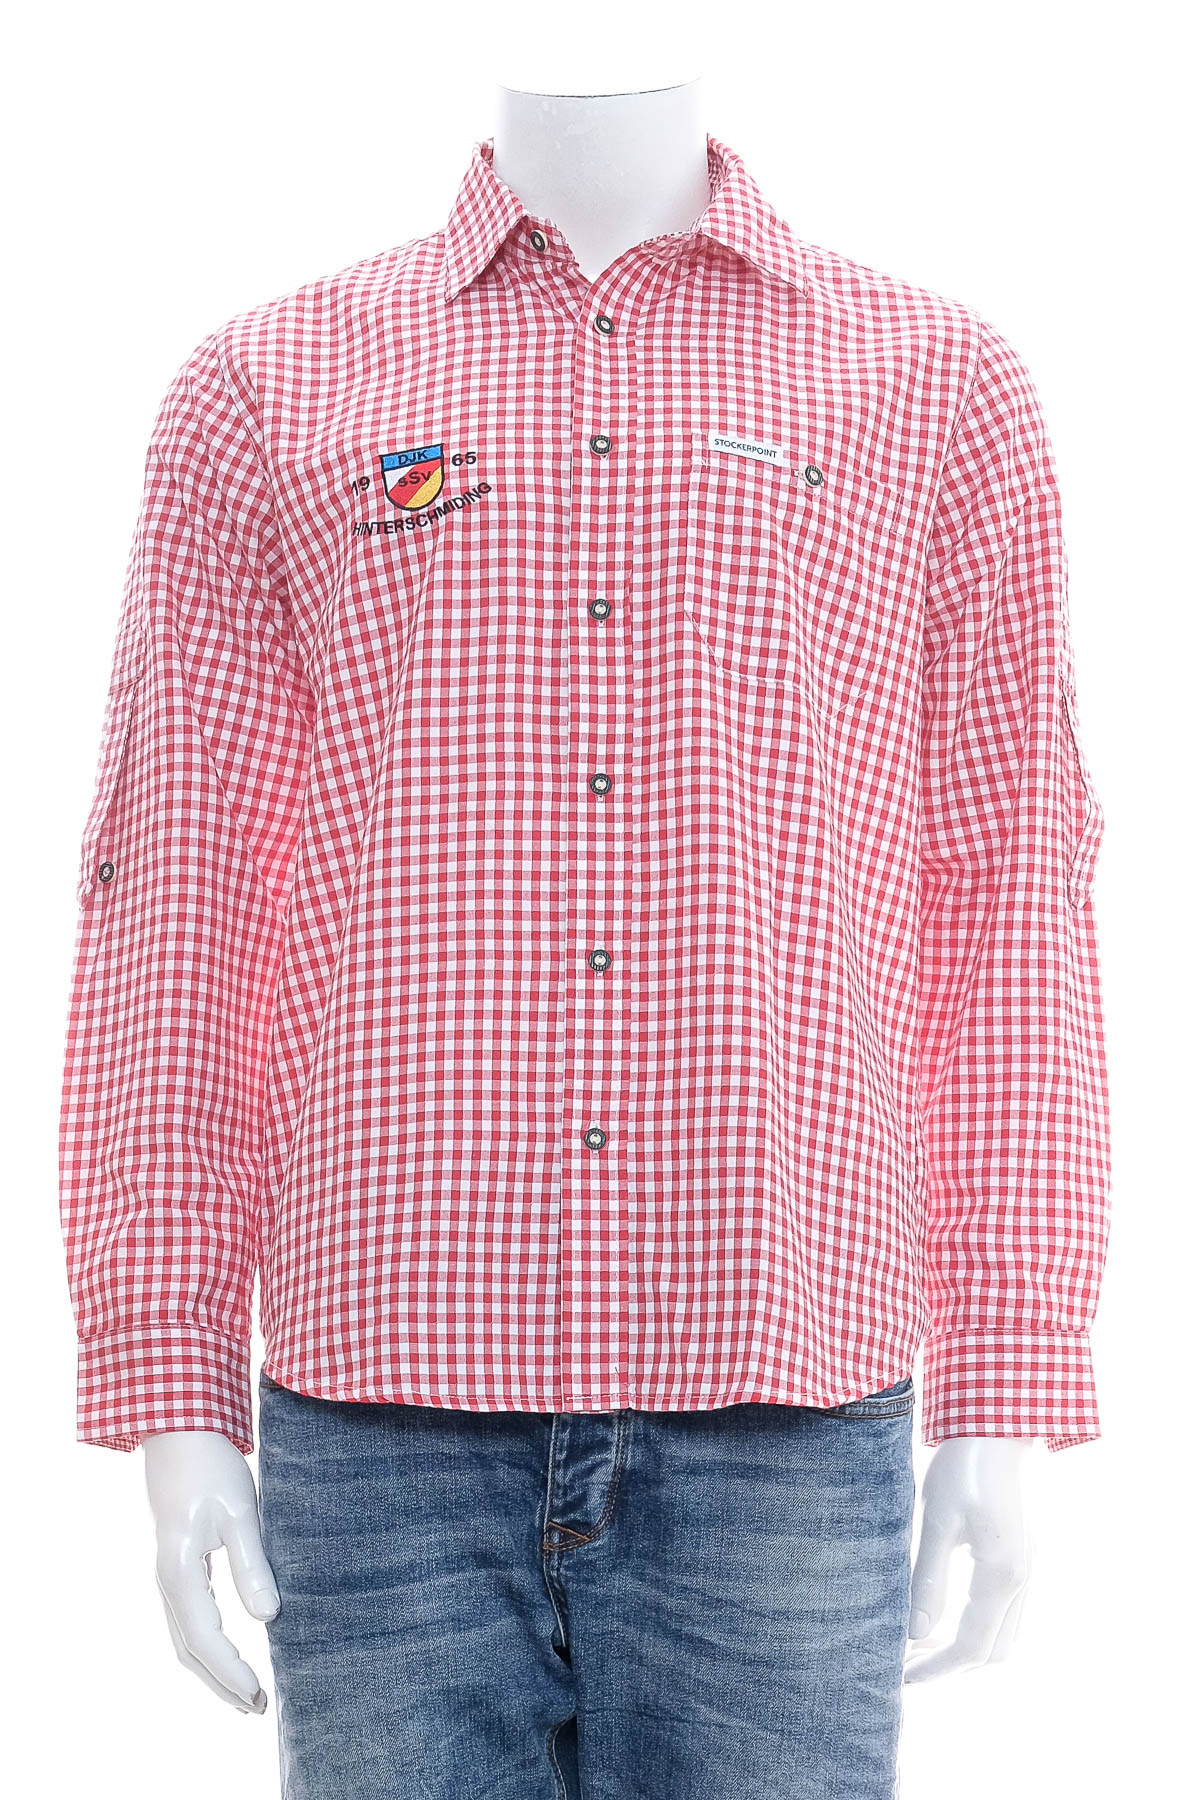 Ανδρικό πουκάμισο - STOCKERPOINT - 0